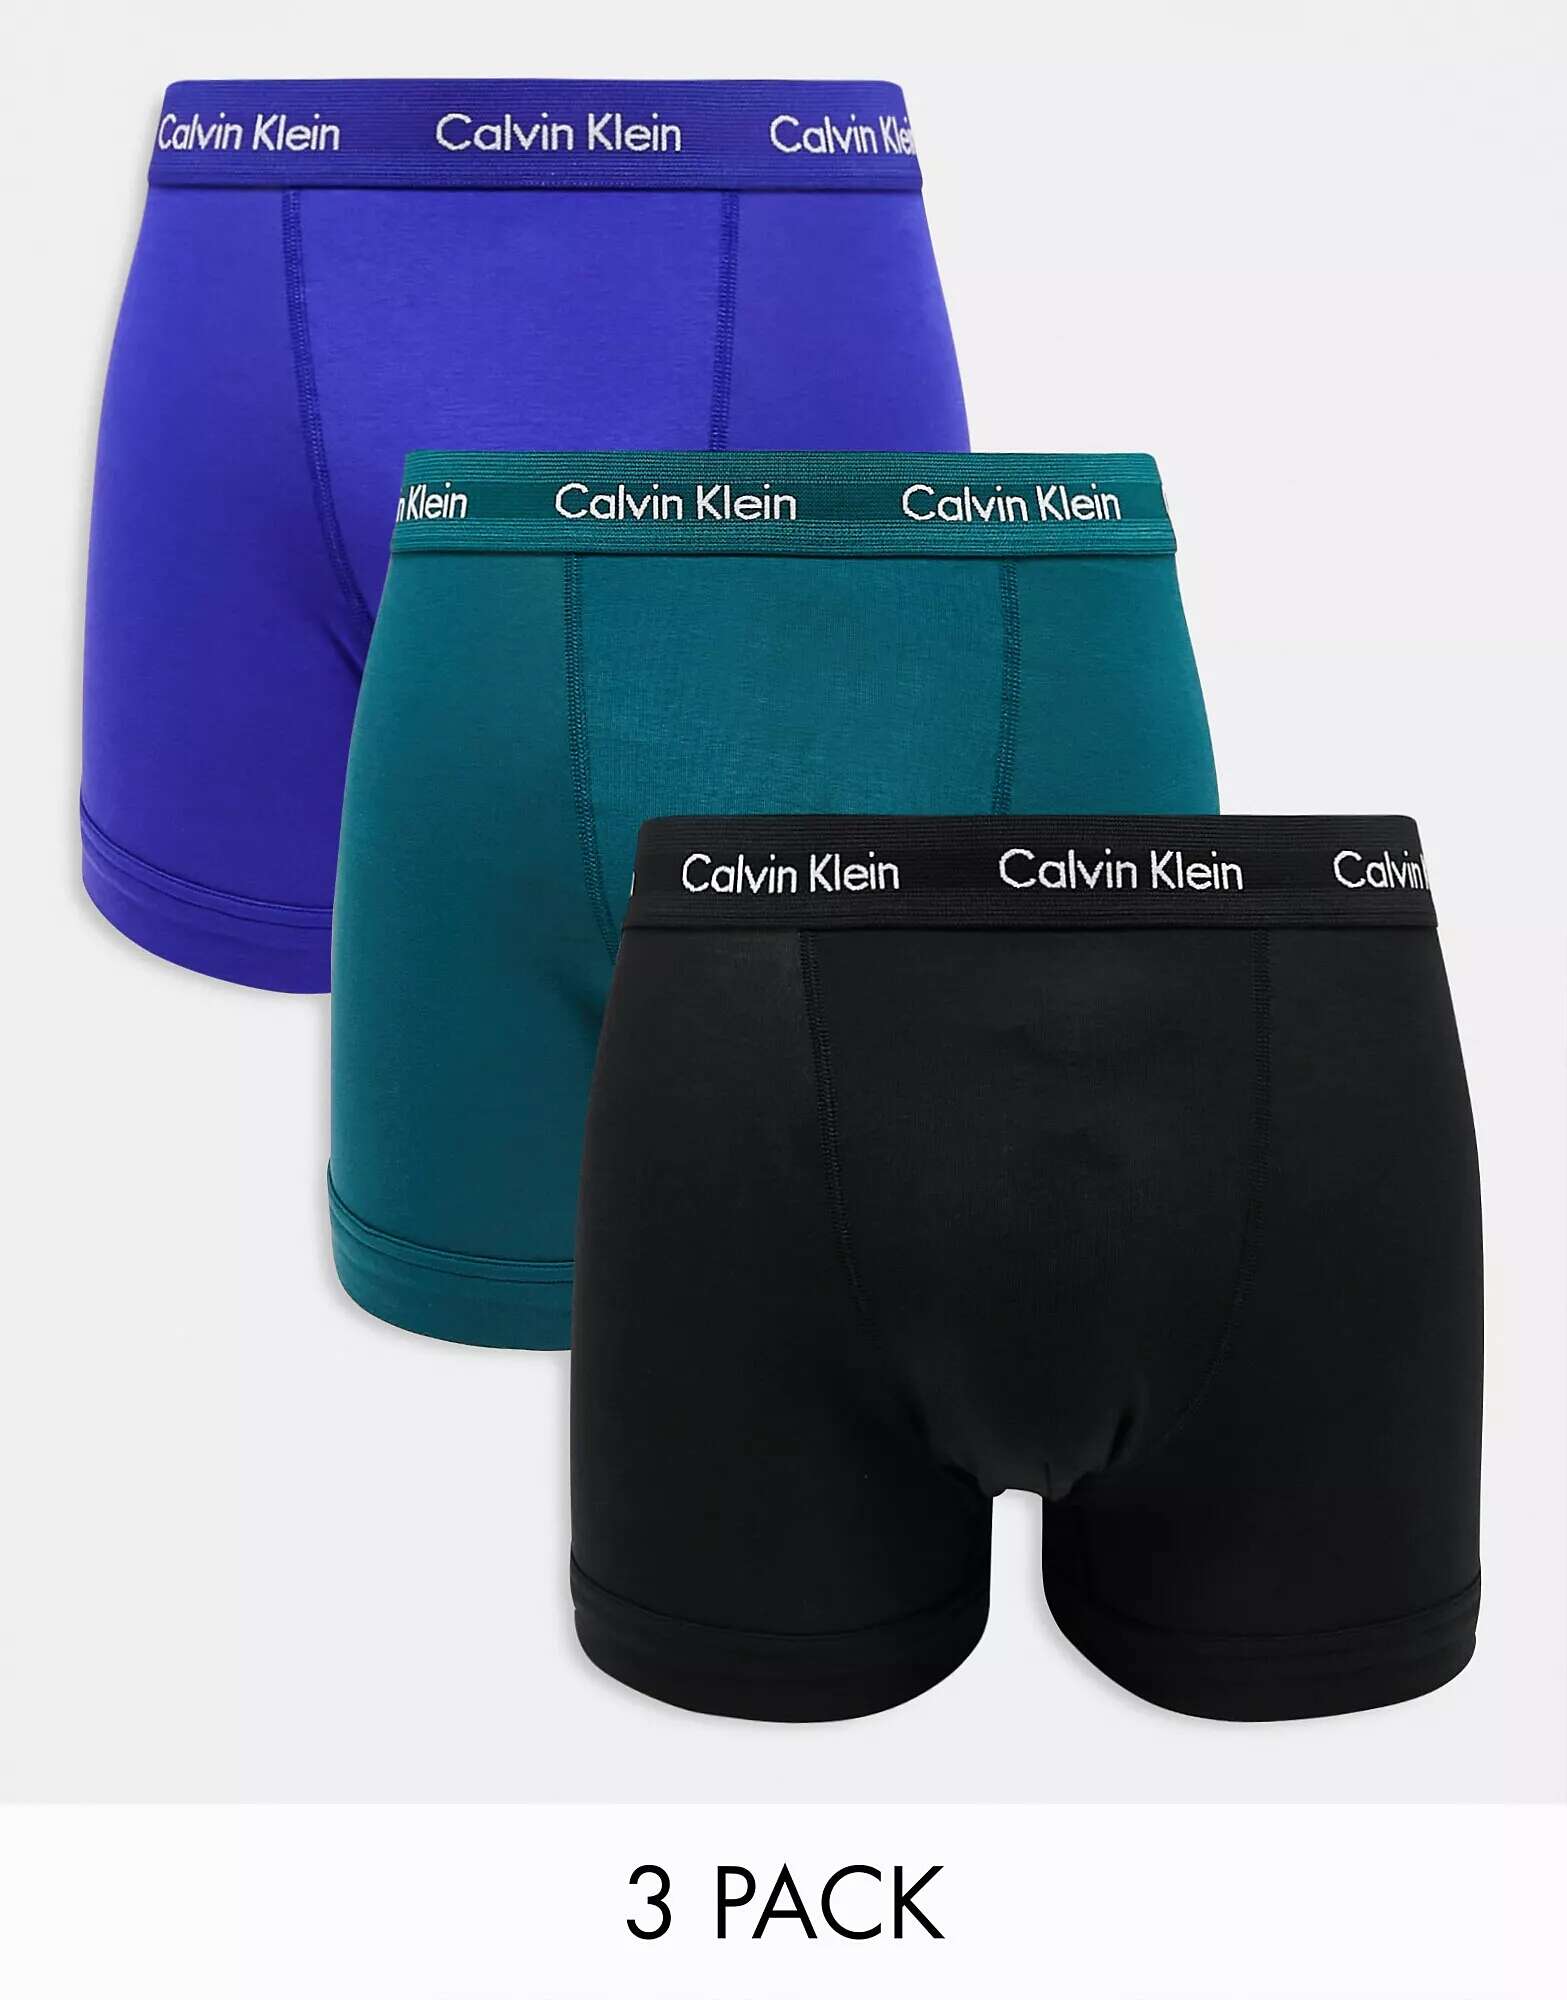 цена Три пары плавок Calvin Klein синего, черного и бирюзового цвета